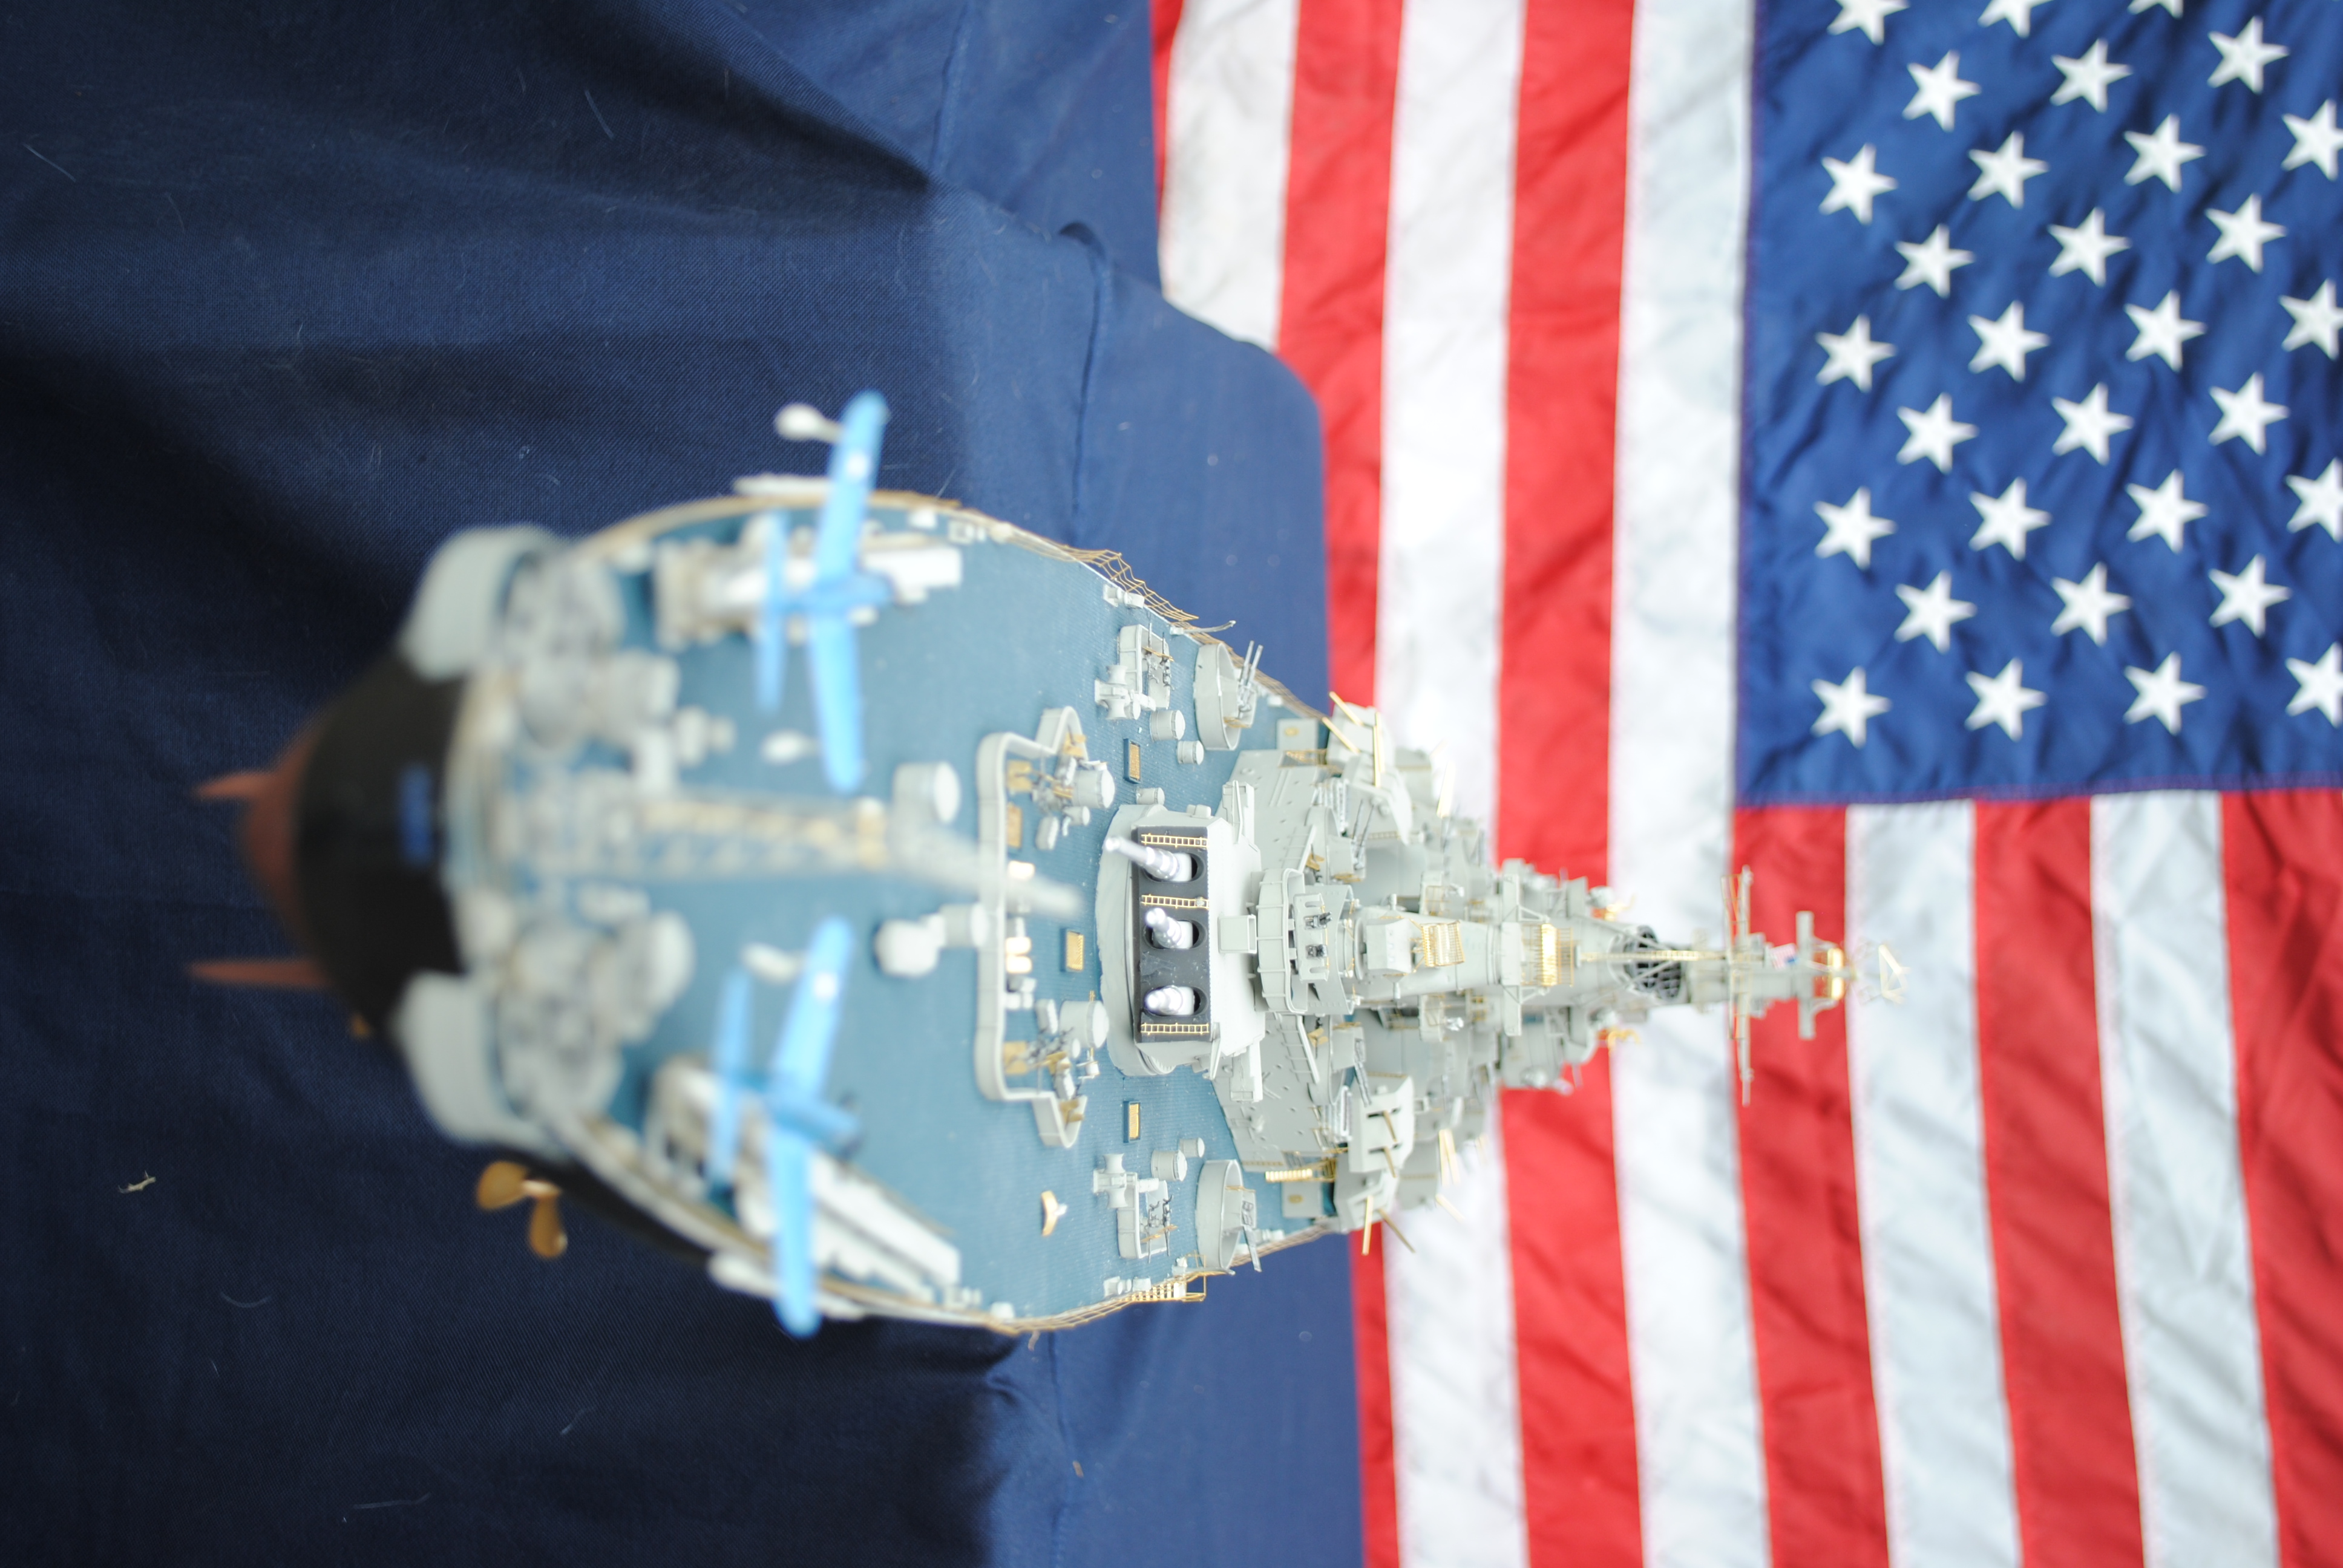 Trumpeter 03706 USS Iowa BB-61 'construit pour l'affichage'